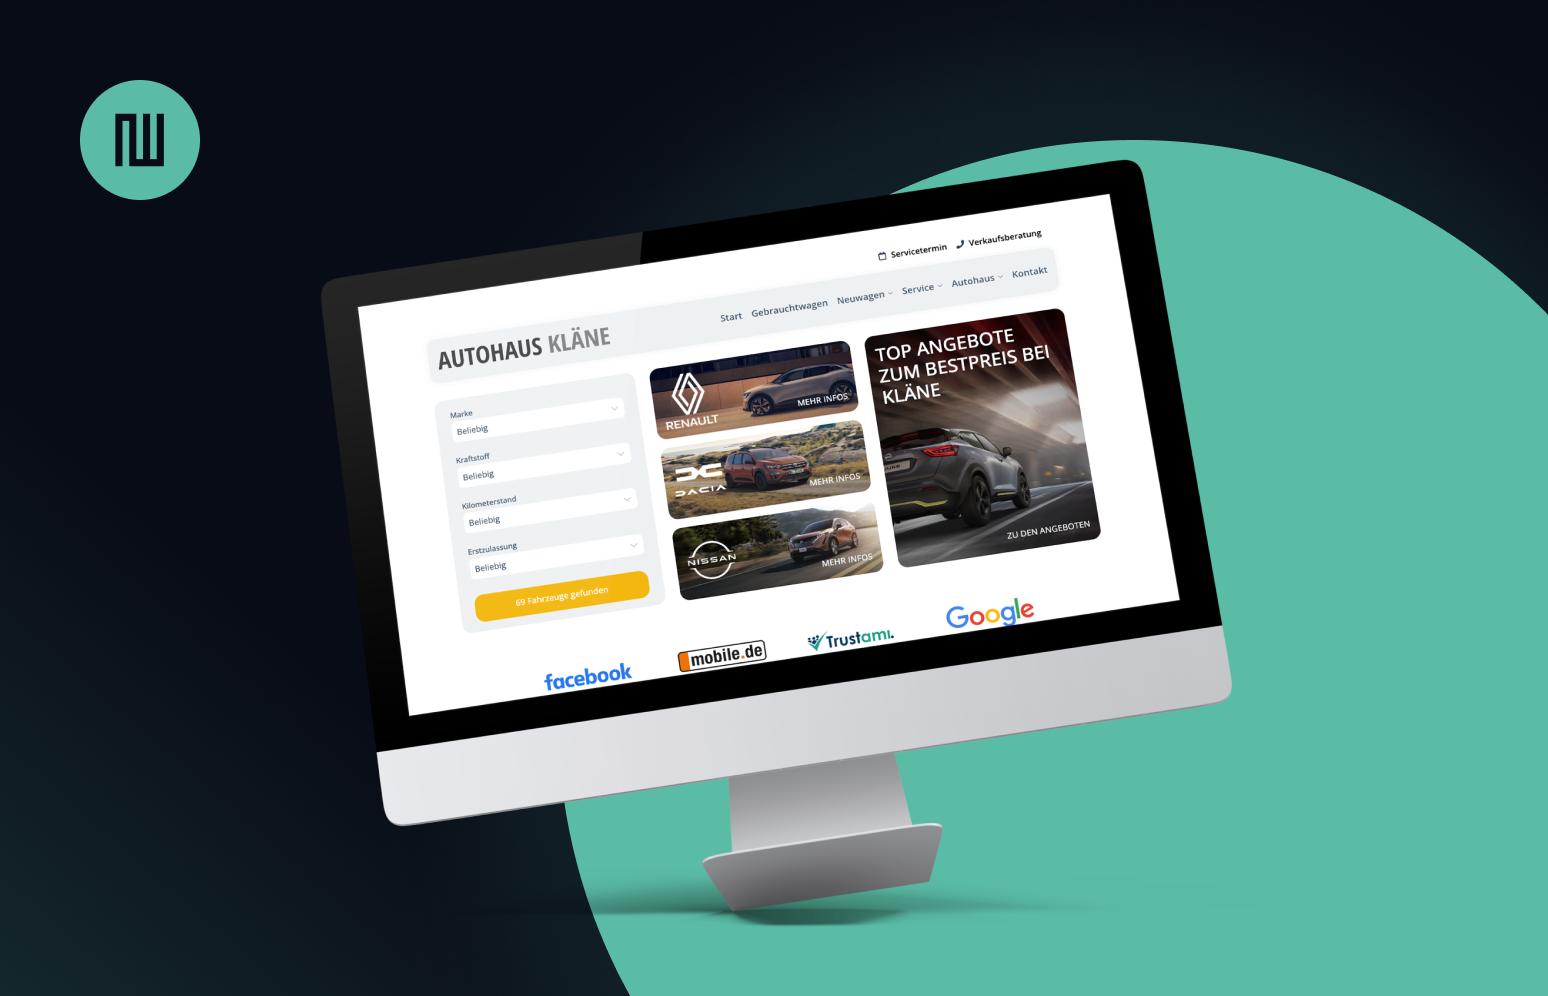 Monitor auf dem eine Autohaus Website mit modernem Webdesign zu sehen ist.